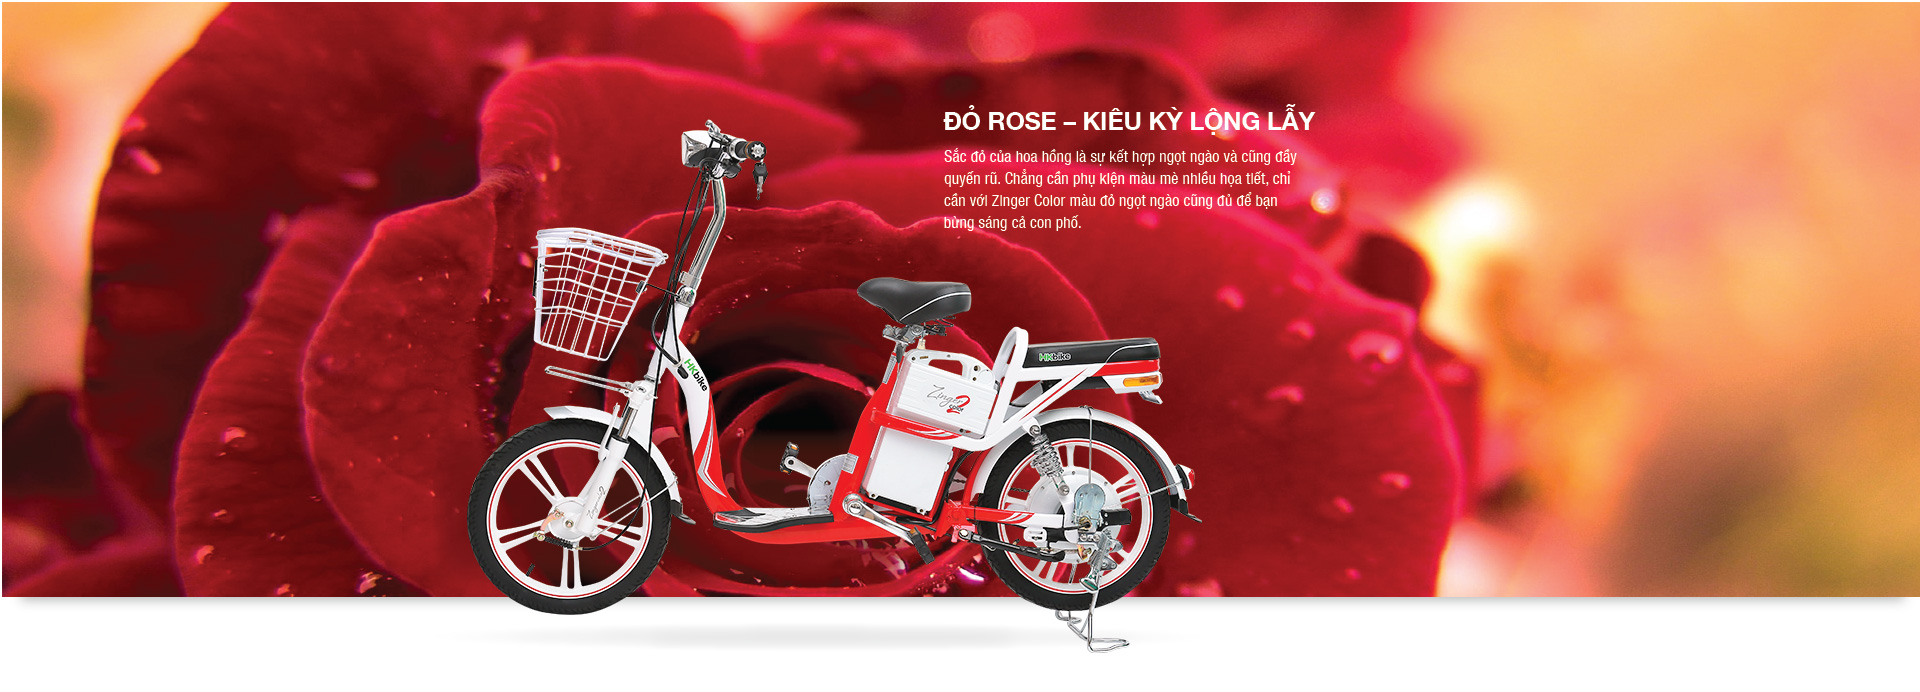 Xe đạp điện Hkbike Zinger Color 